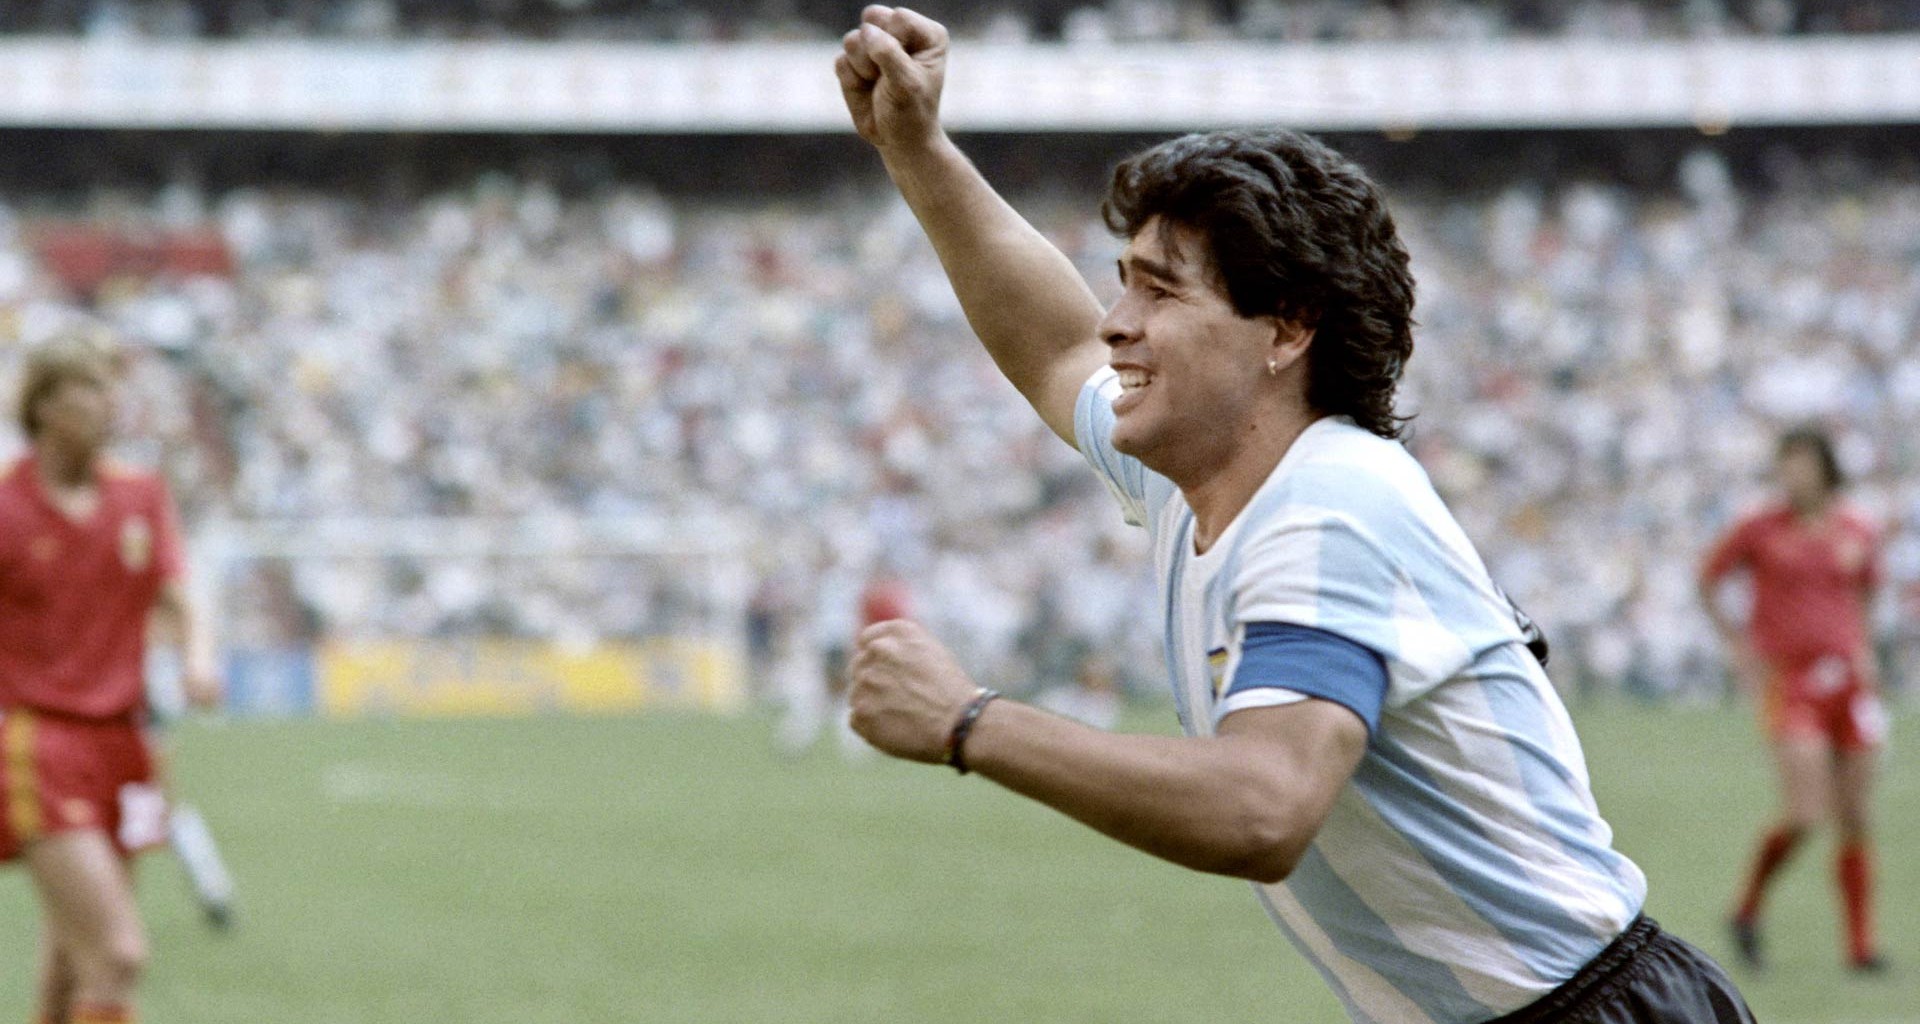 Antonio Rosique y coach de Borreguitas hablan sobre el legado de Maradona